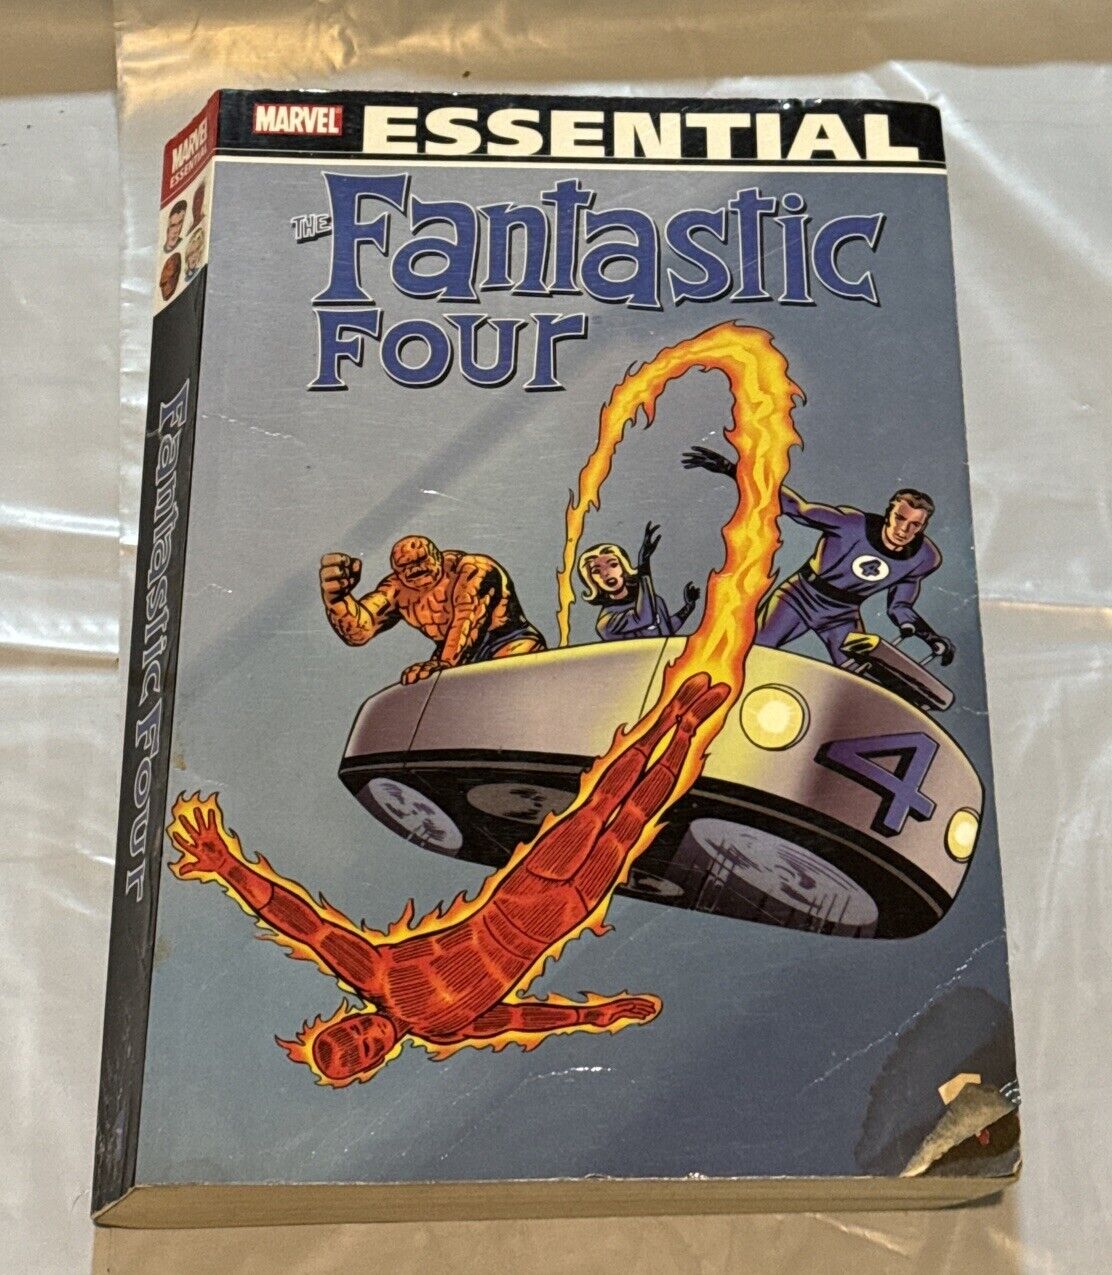 Fantastic Four Volume 1 Marvel Essential Graphic Novel Stan Lee Trade Paperback